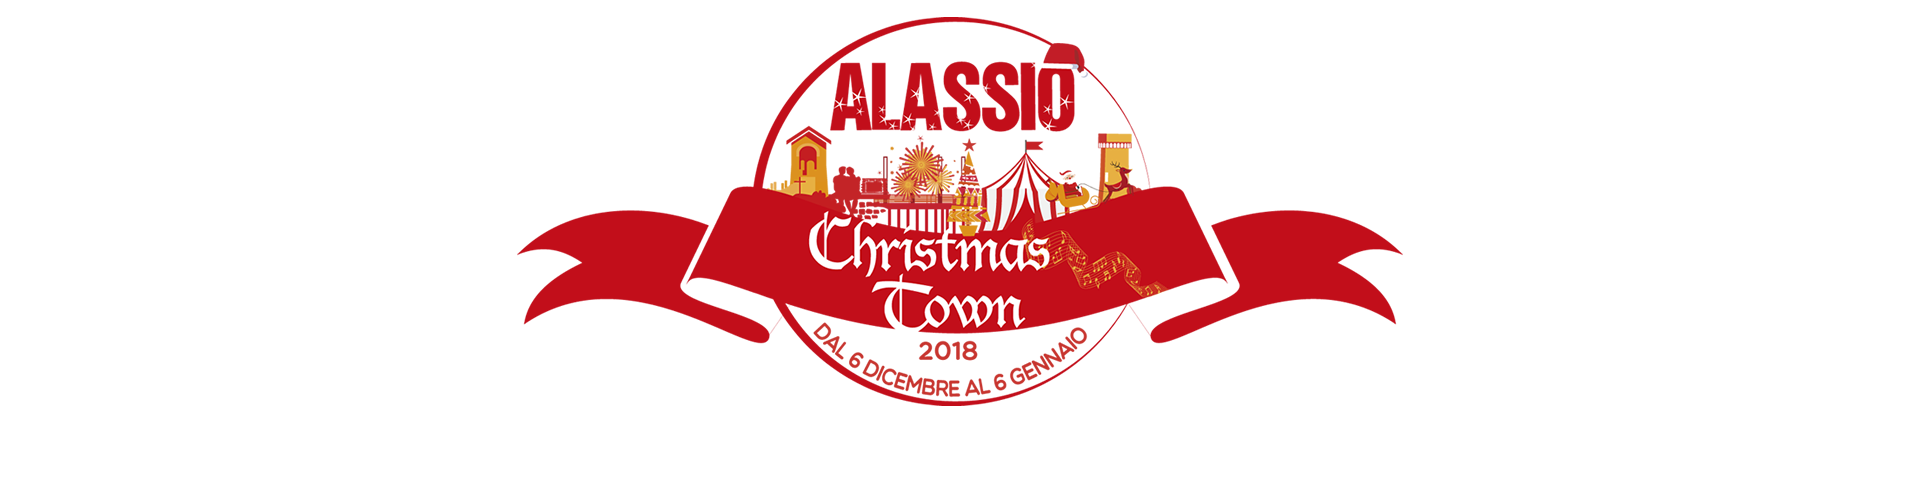 Alassio Christmas Town 2018